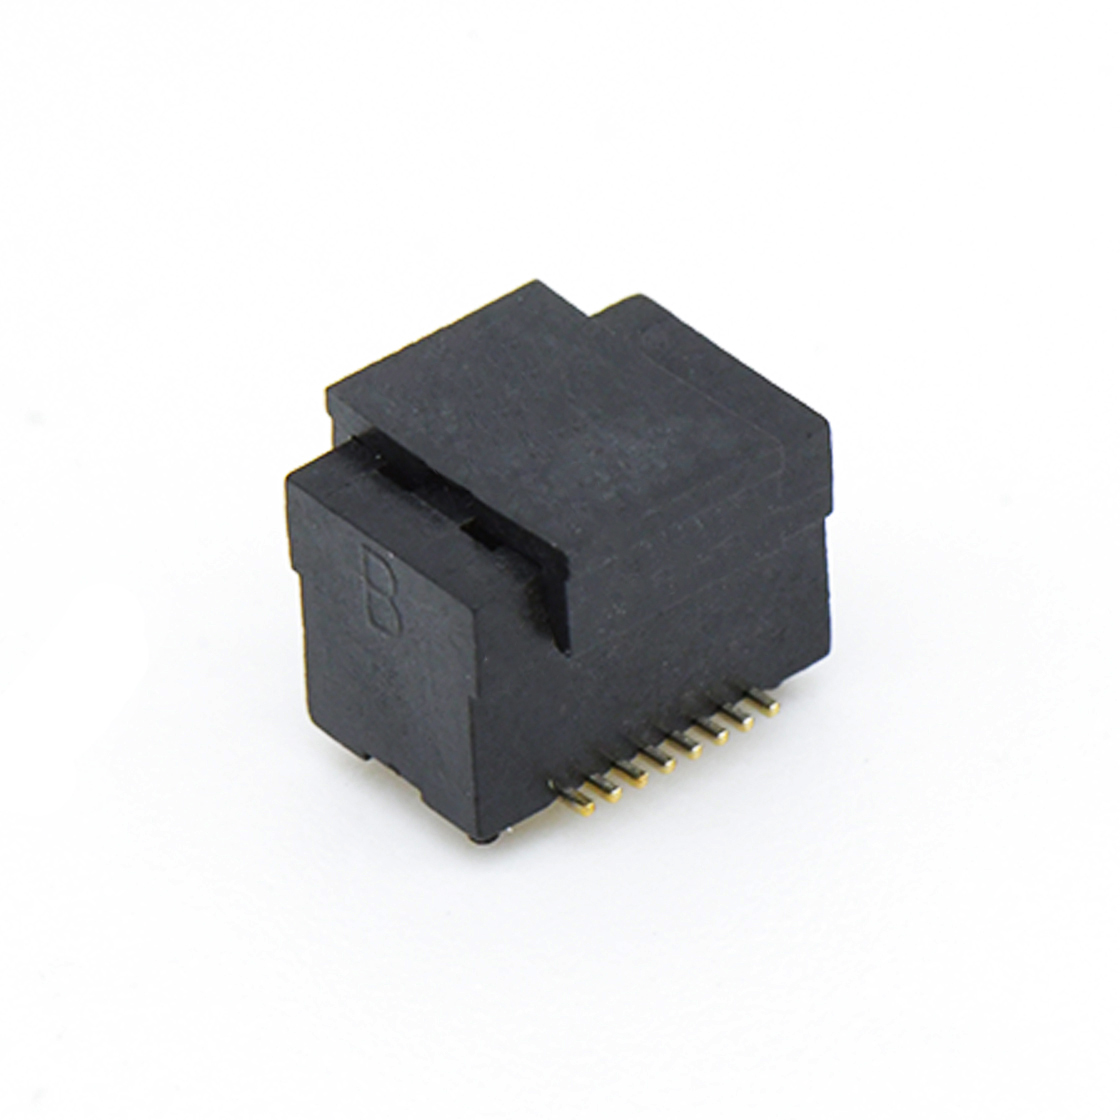 B0502板对板连接器Pitch 0.5 H4.5mm双槽双排 SMT型母座 16Pin黑色 Gold flash